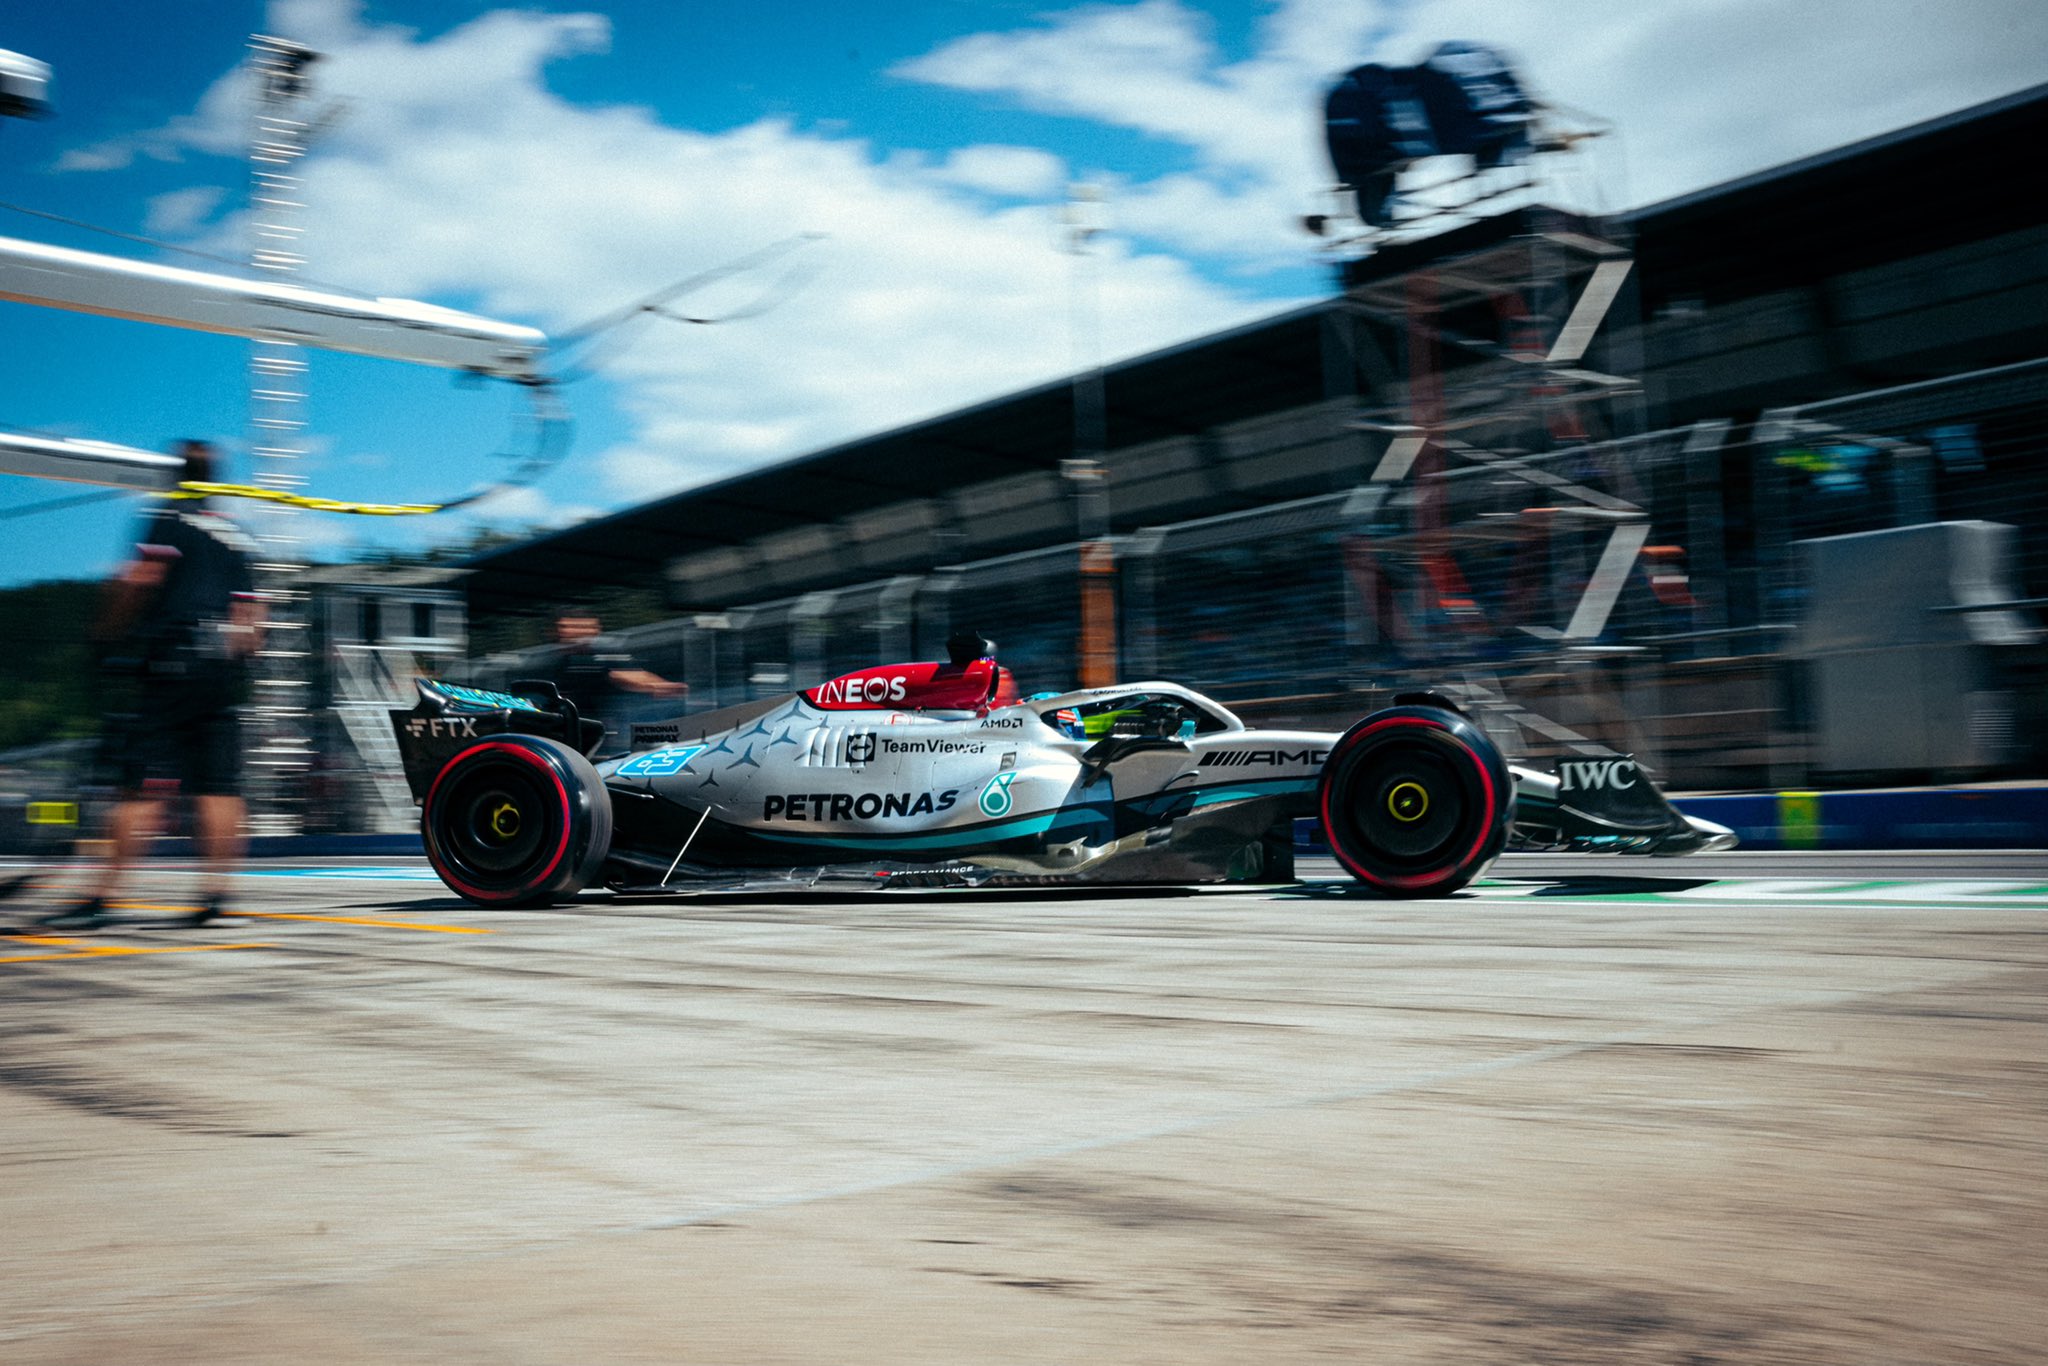 Viernes en Austria – Mercedes: los accidentes de Russell y Hamilton en Q3 frustran sus posibilidades